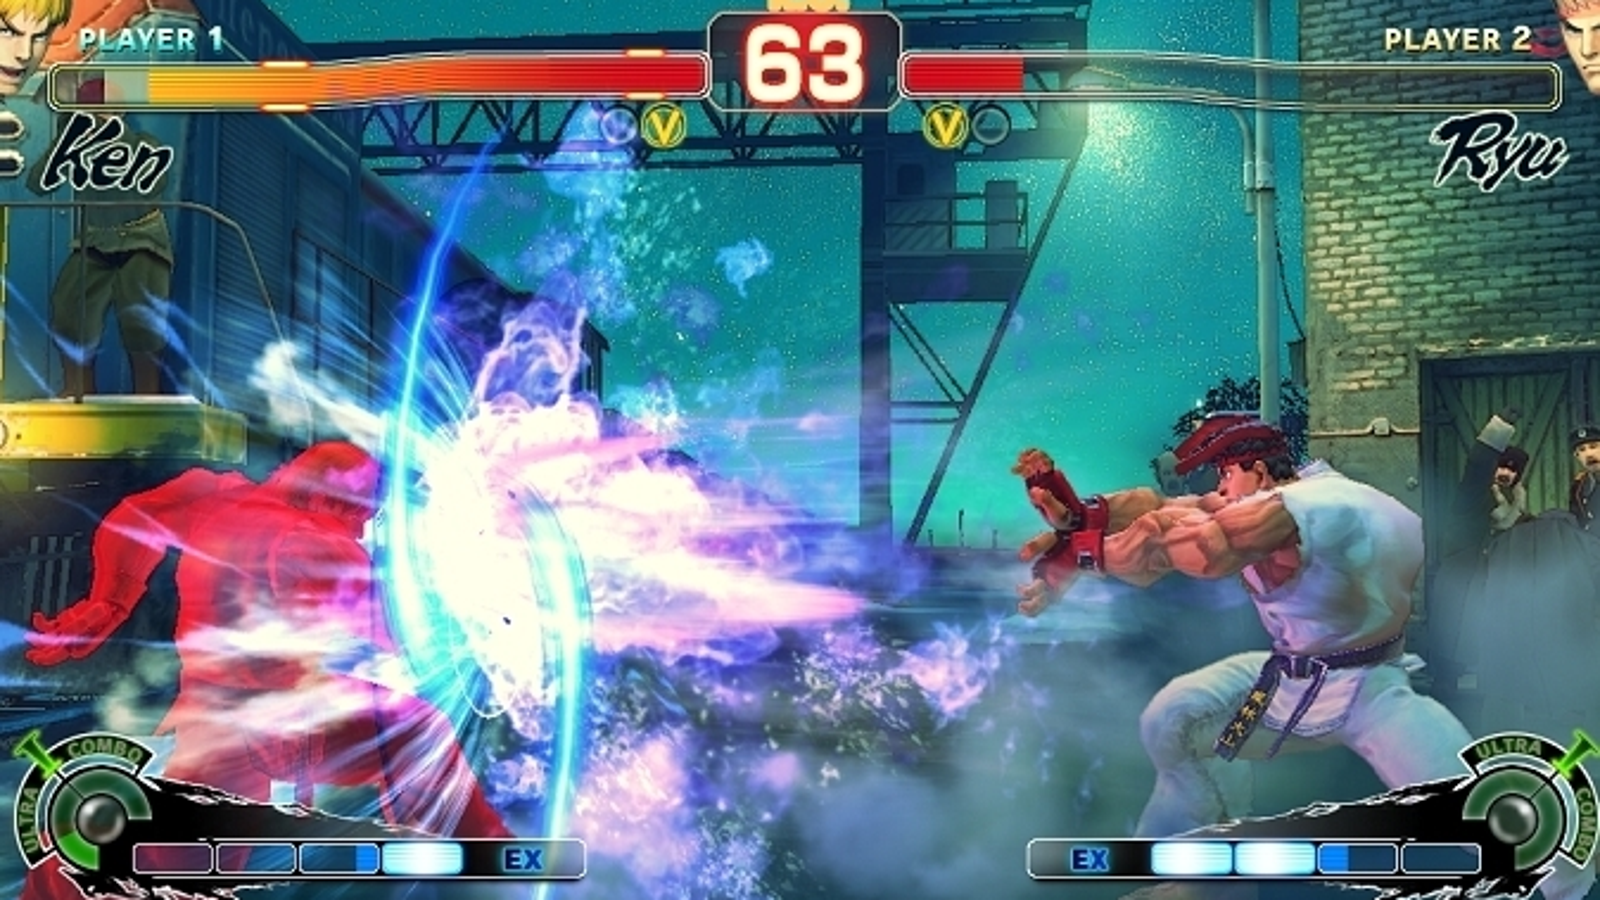 Samuel Voorzieningen pindas Ultra Street Fighter 4 new battle systems unveiled | Eurogamer.net